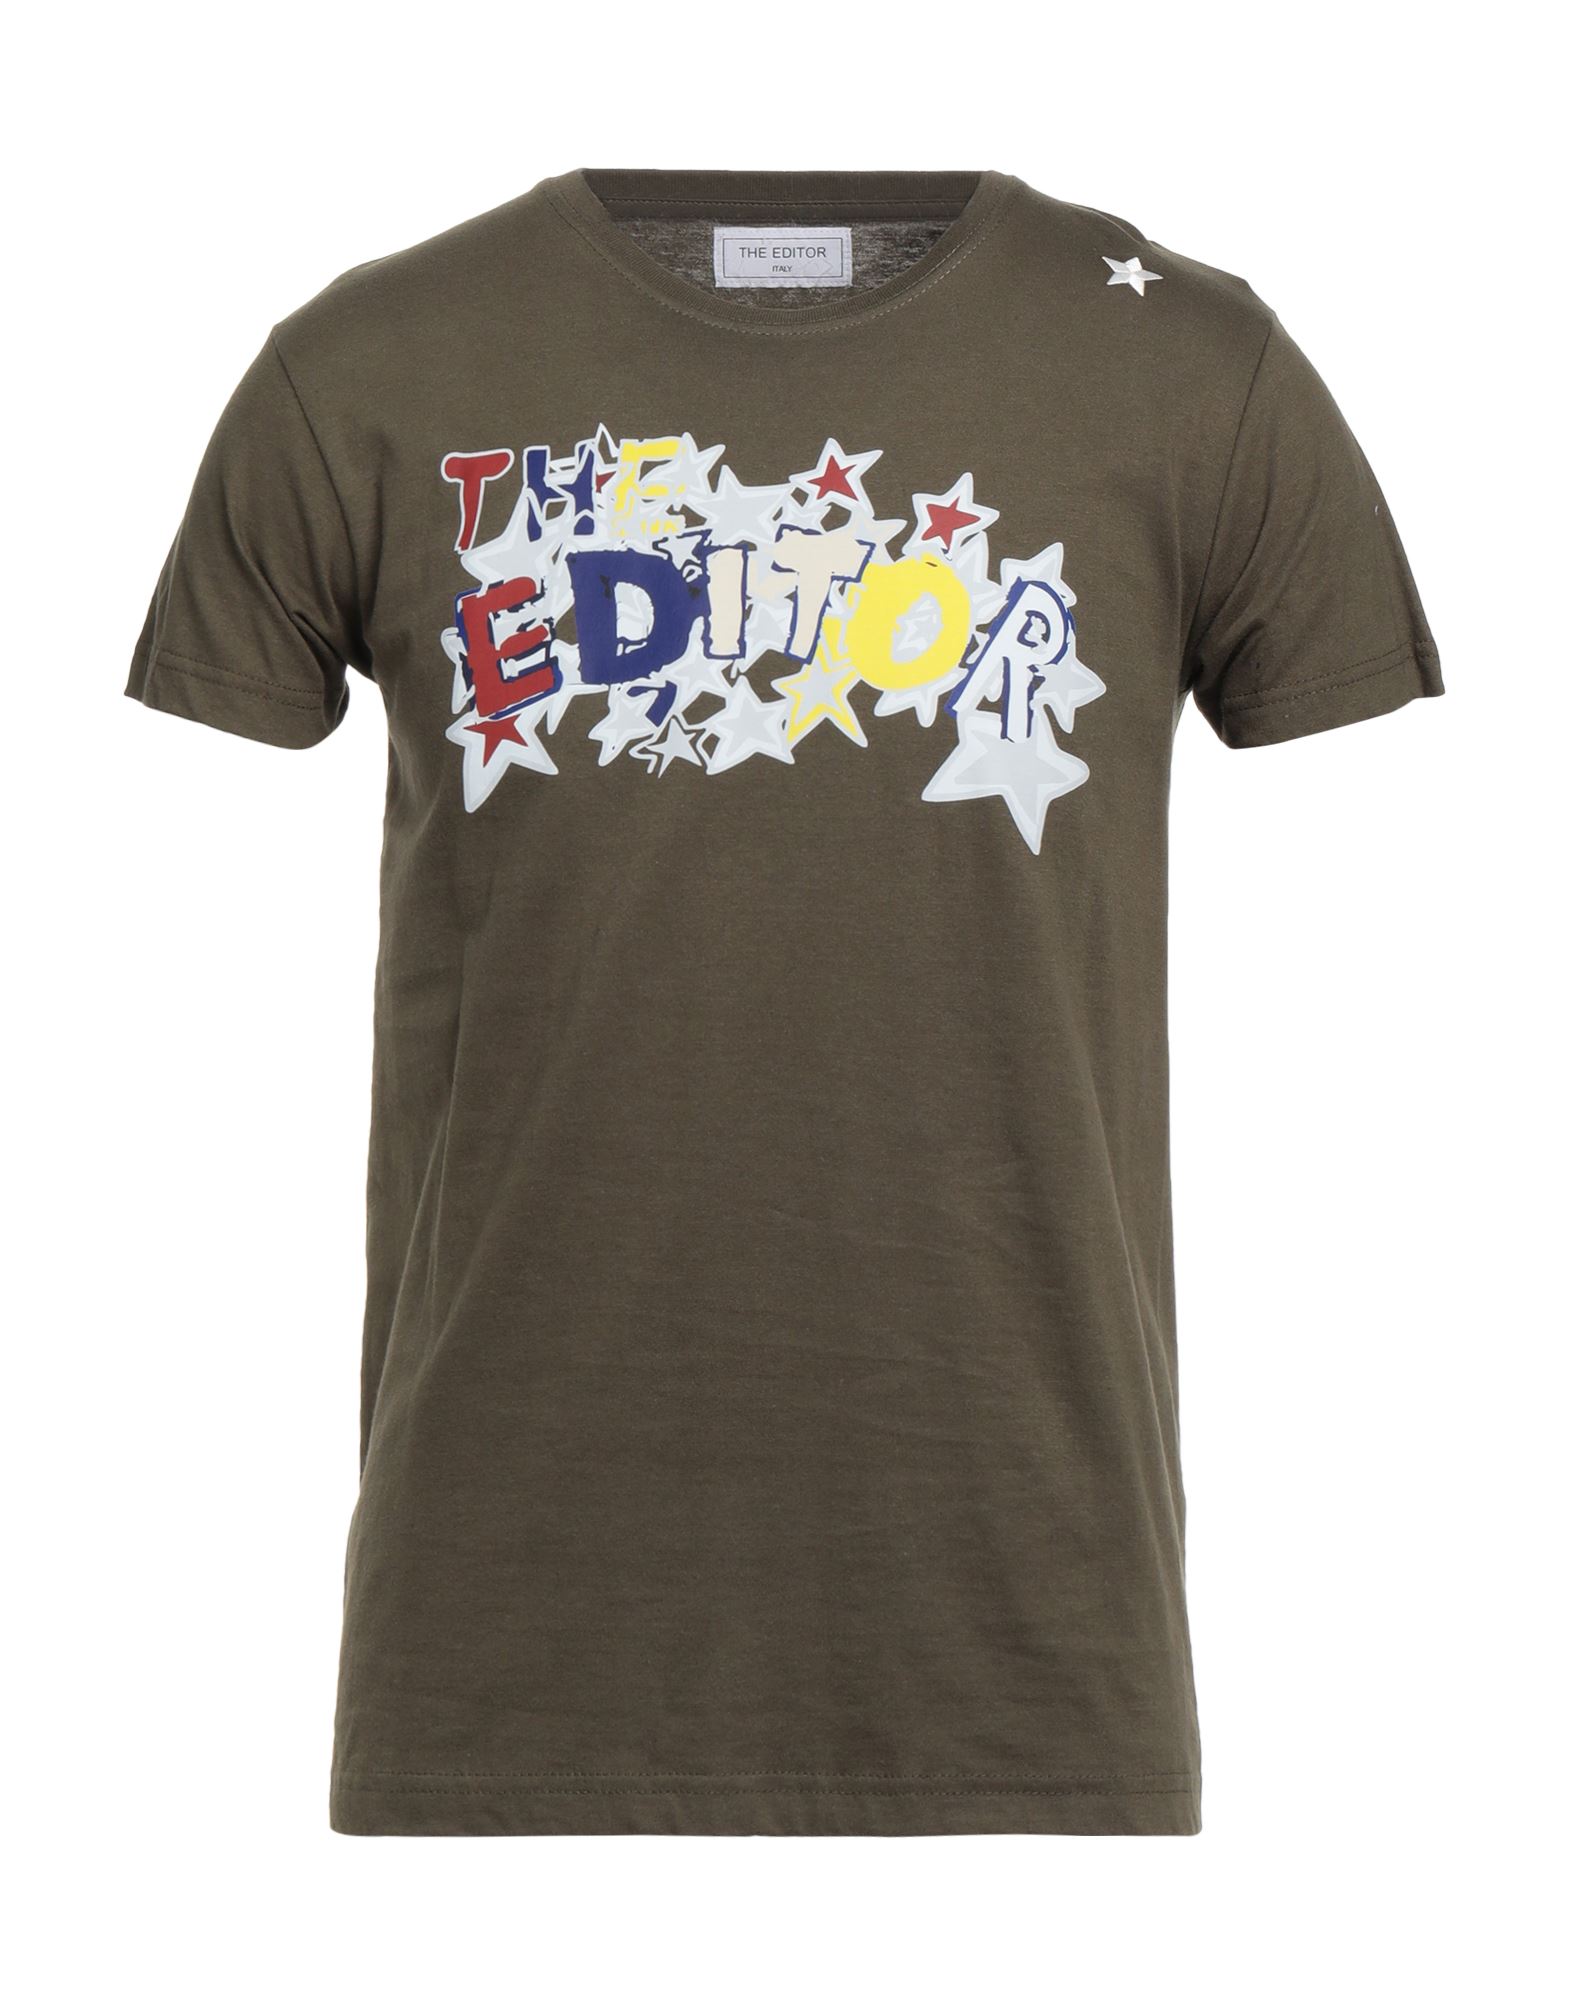 THE EDITOR T-shirts Herren Militärgrün von THE EDITOR